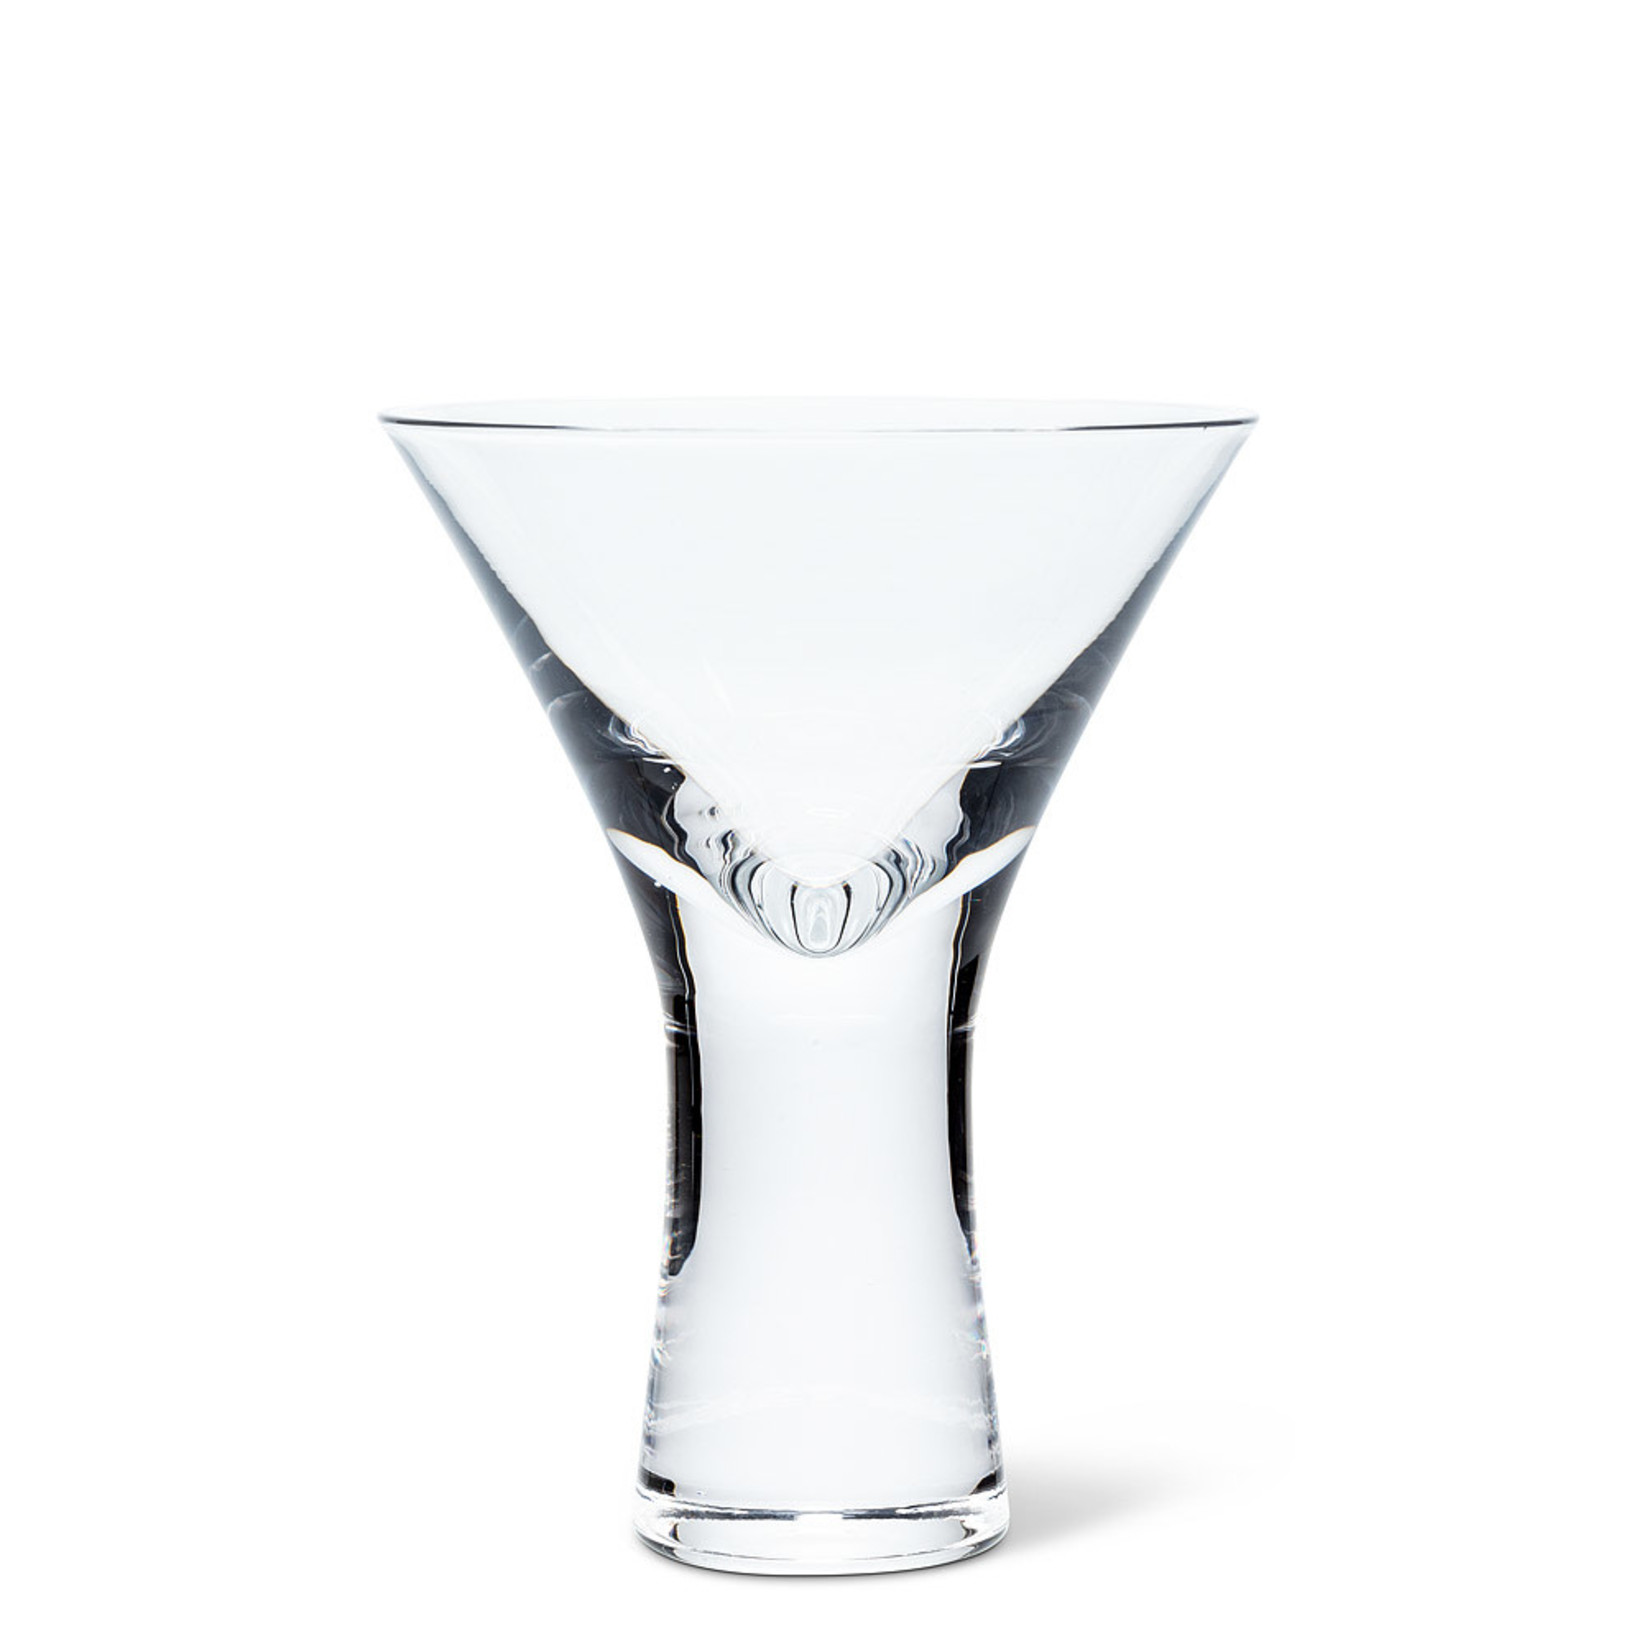 ABBOTT ABBOTT Heavy Sham Martini Glass